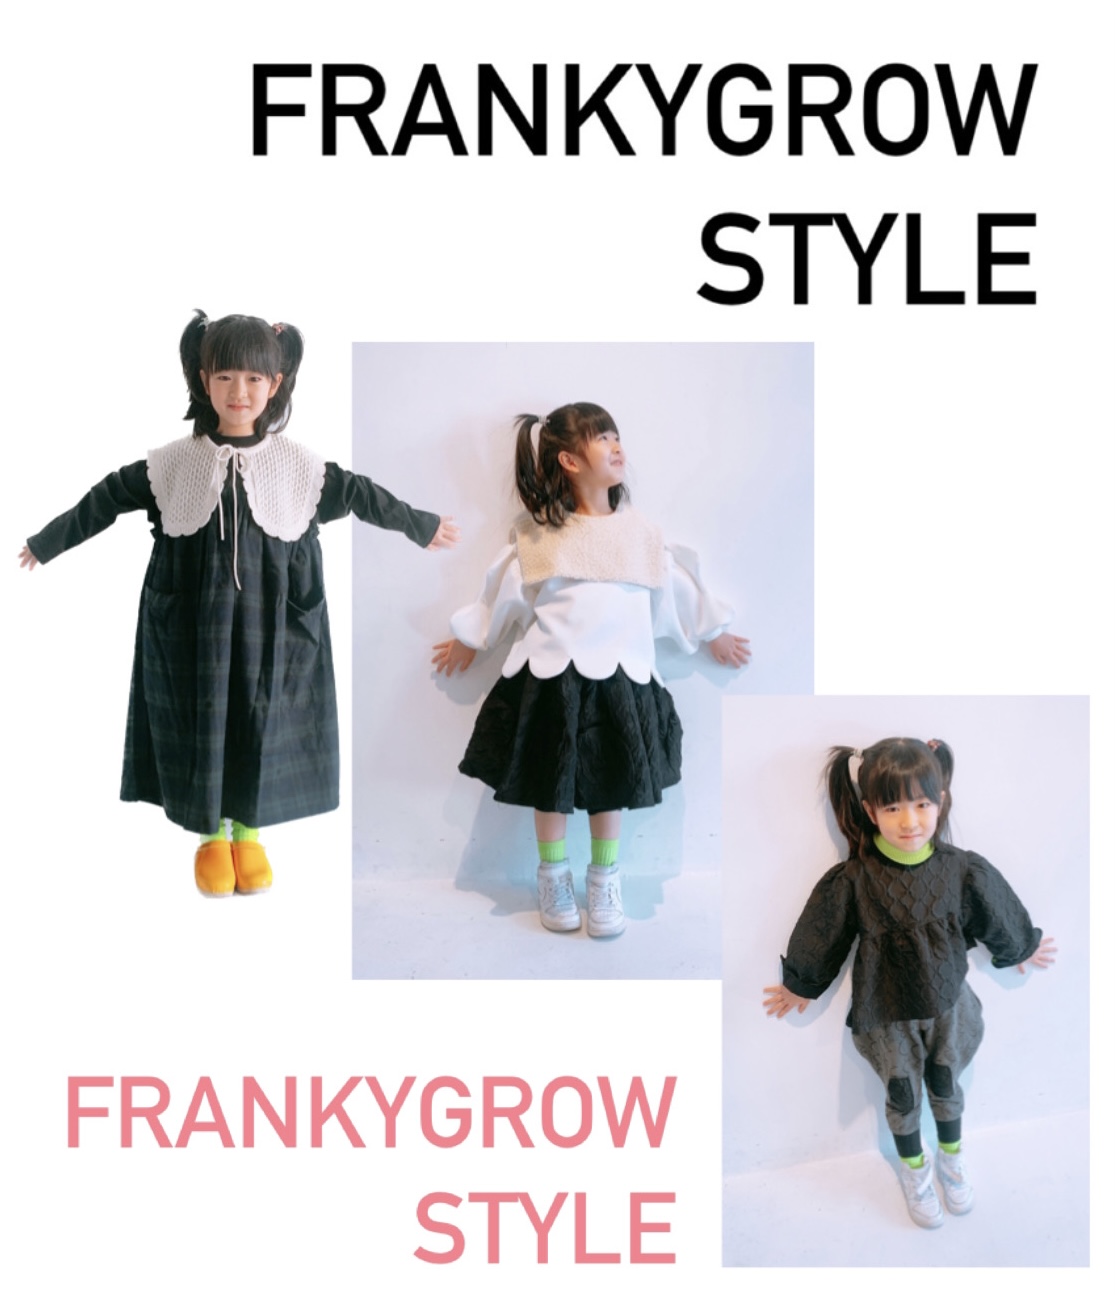 frankygrow style